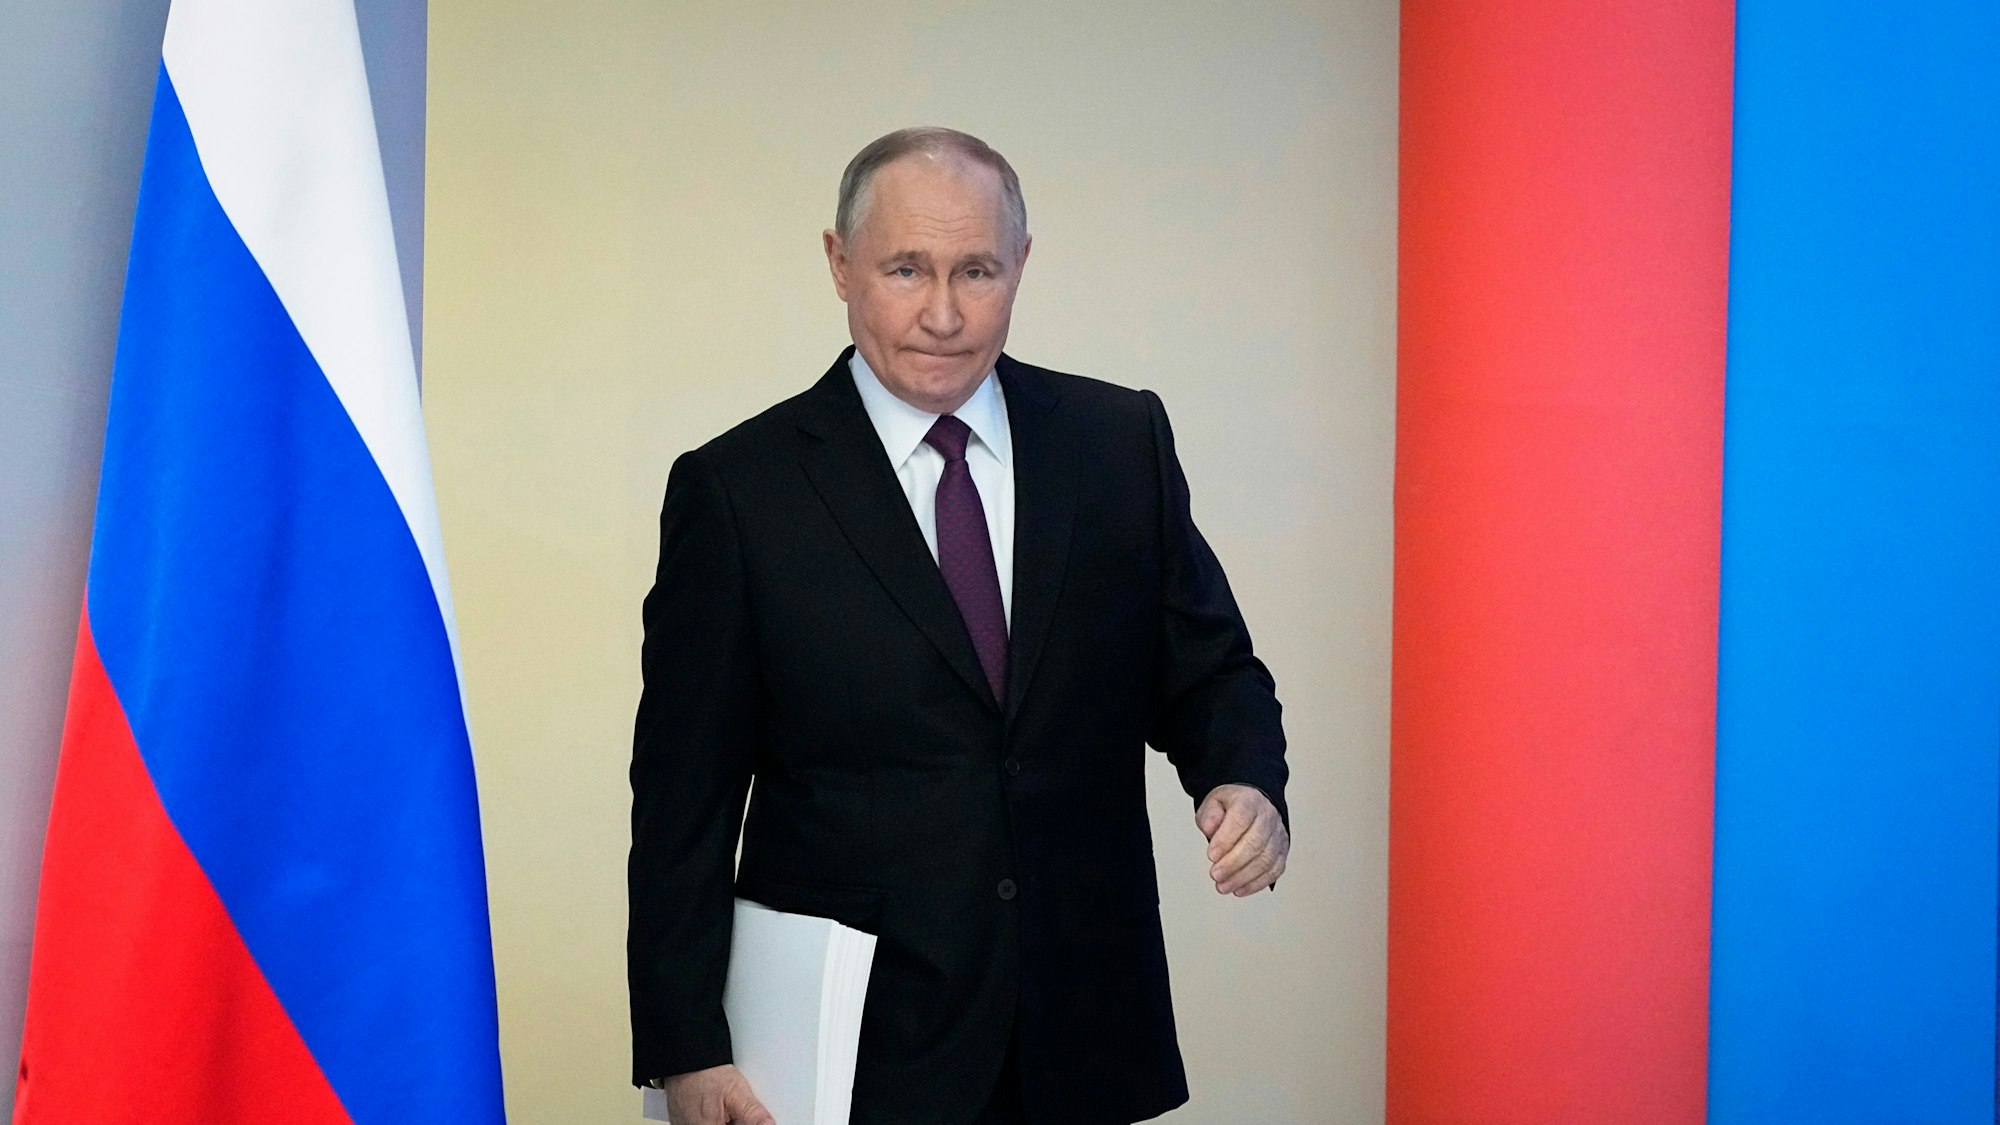 Wladimir Putin, Präsident von Russland, muss sich mit Negativ-Berichten auseinandersetzen. (Archivbild)